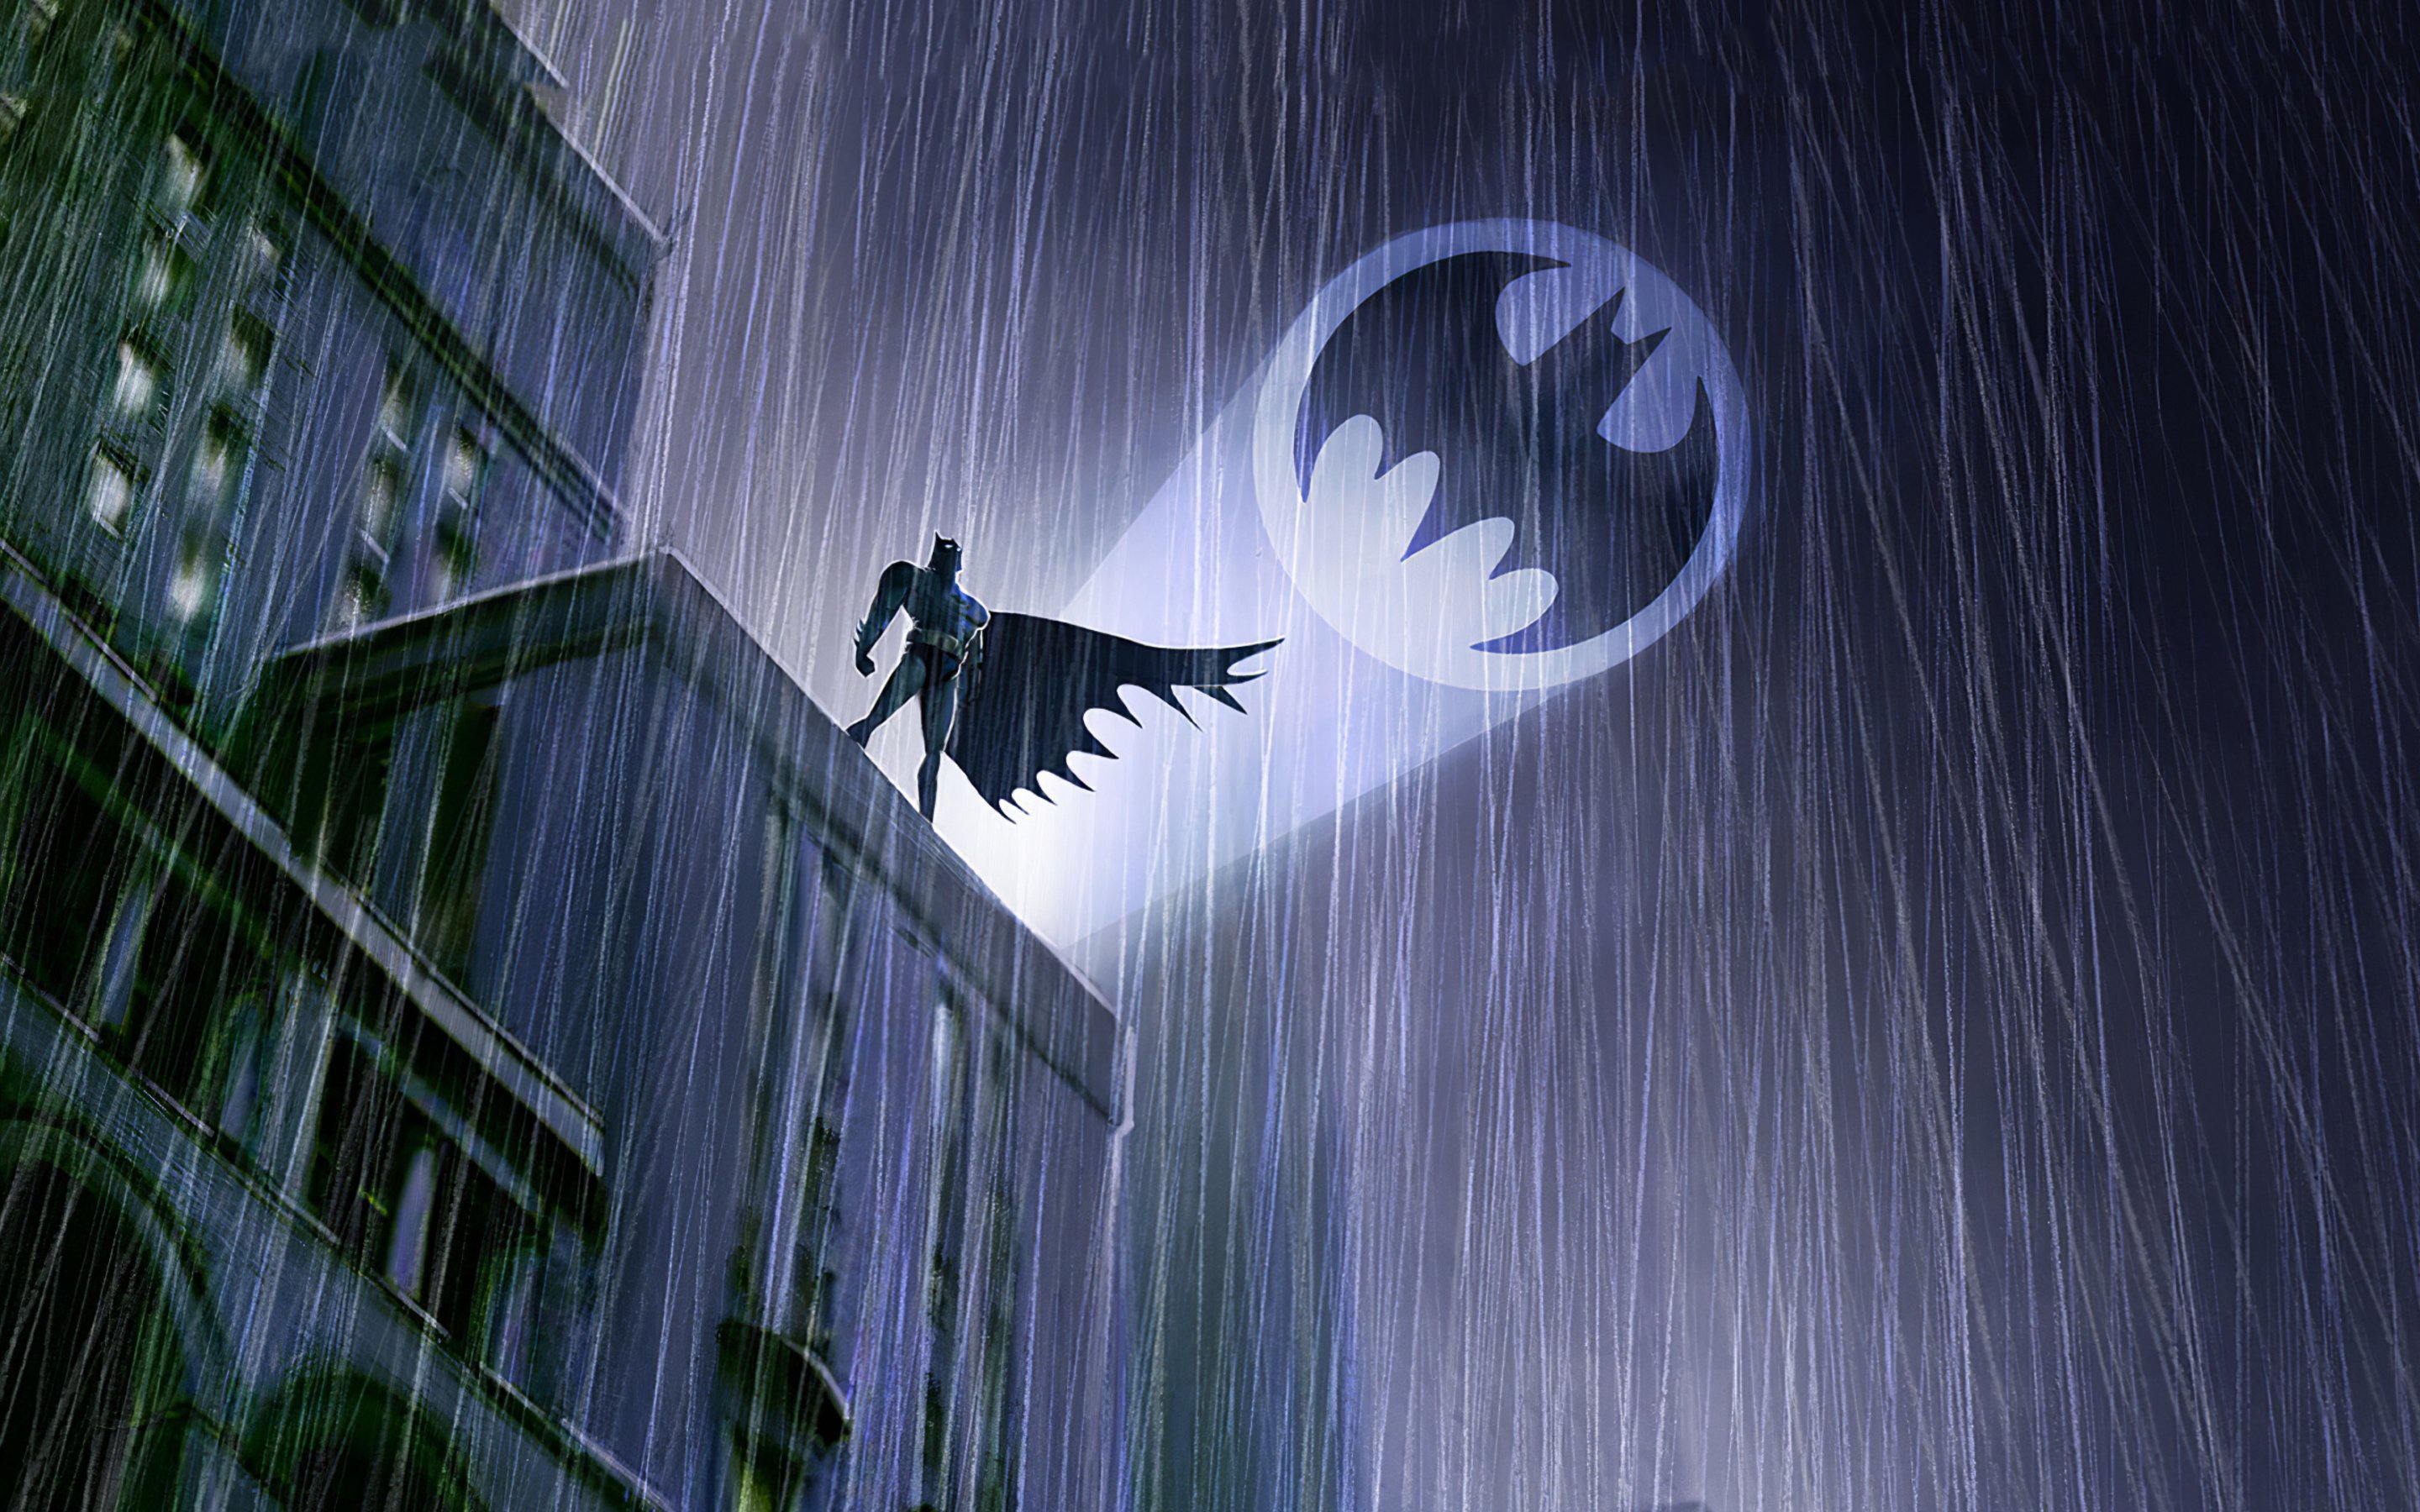 Batman in the rain Wallpaper 4k HD ID:4923